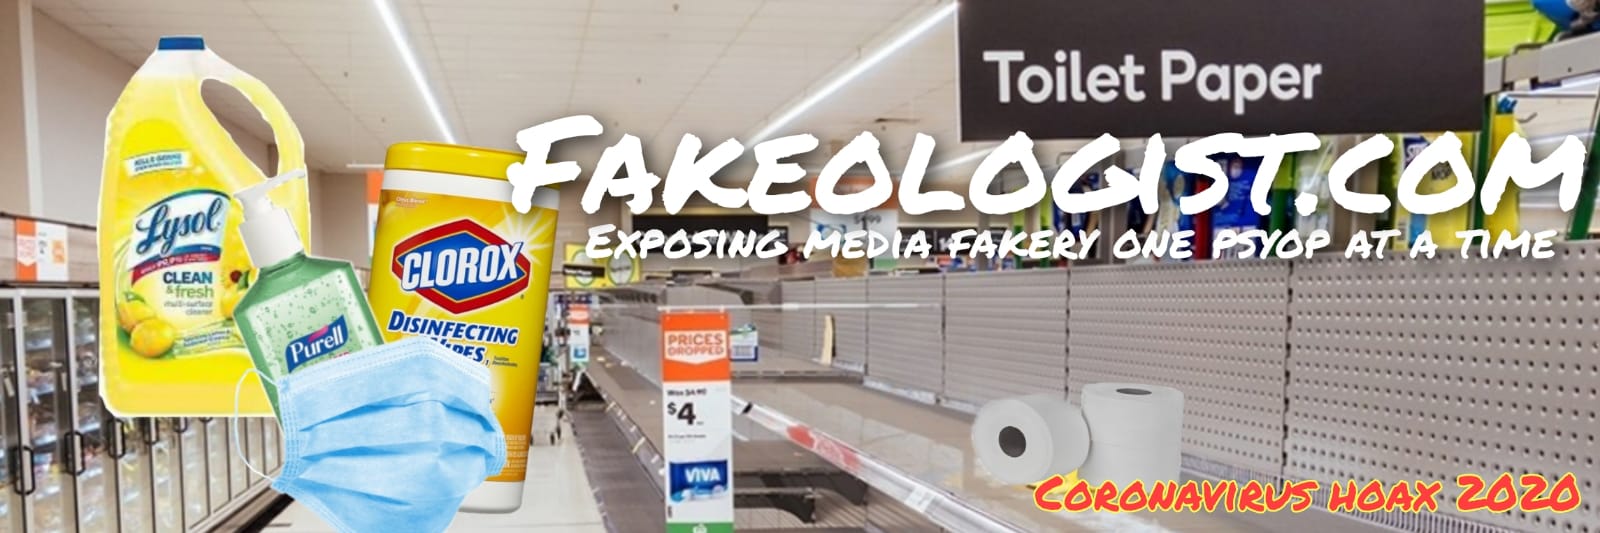 Fakeologist.com